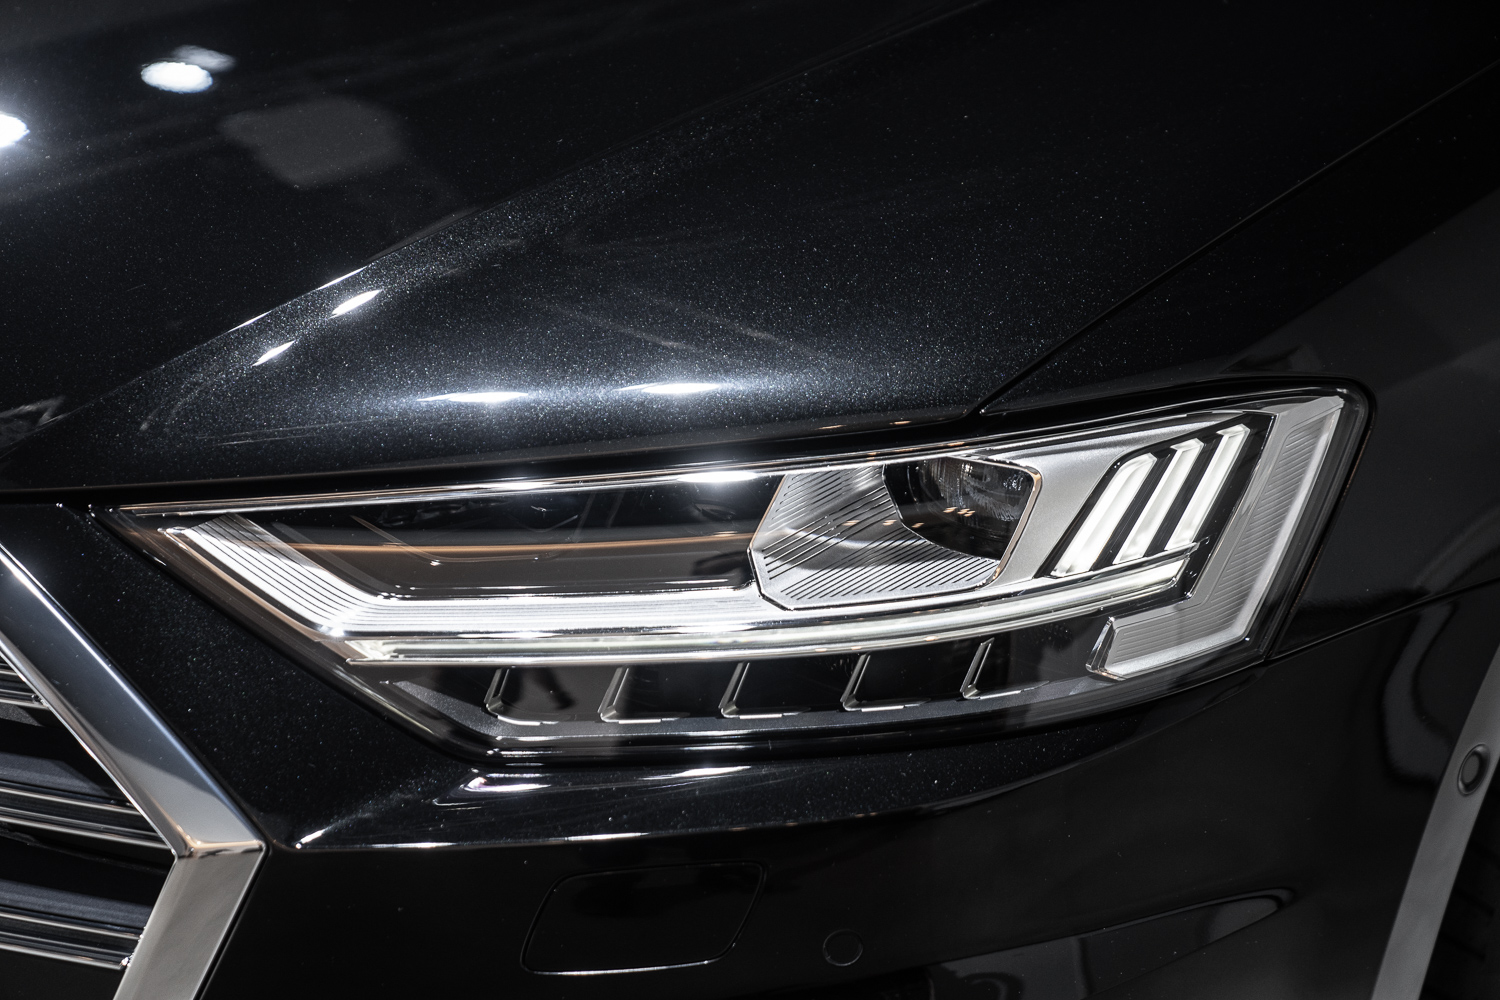 Audi HD 高階矩陣式 LED 極光頭燈在任何天候狀況，皆可敏捷的依據路況與車輛相對距離主動調整照射角度，提升駕駛更寬廣清晰的視野。